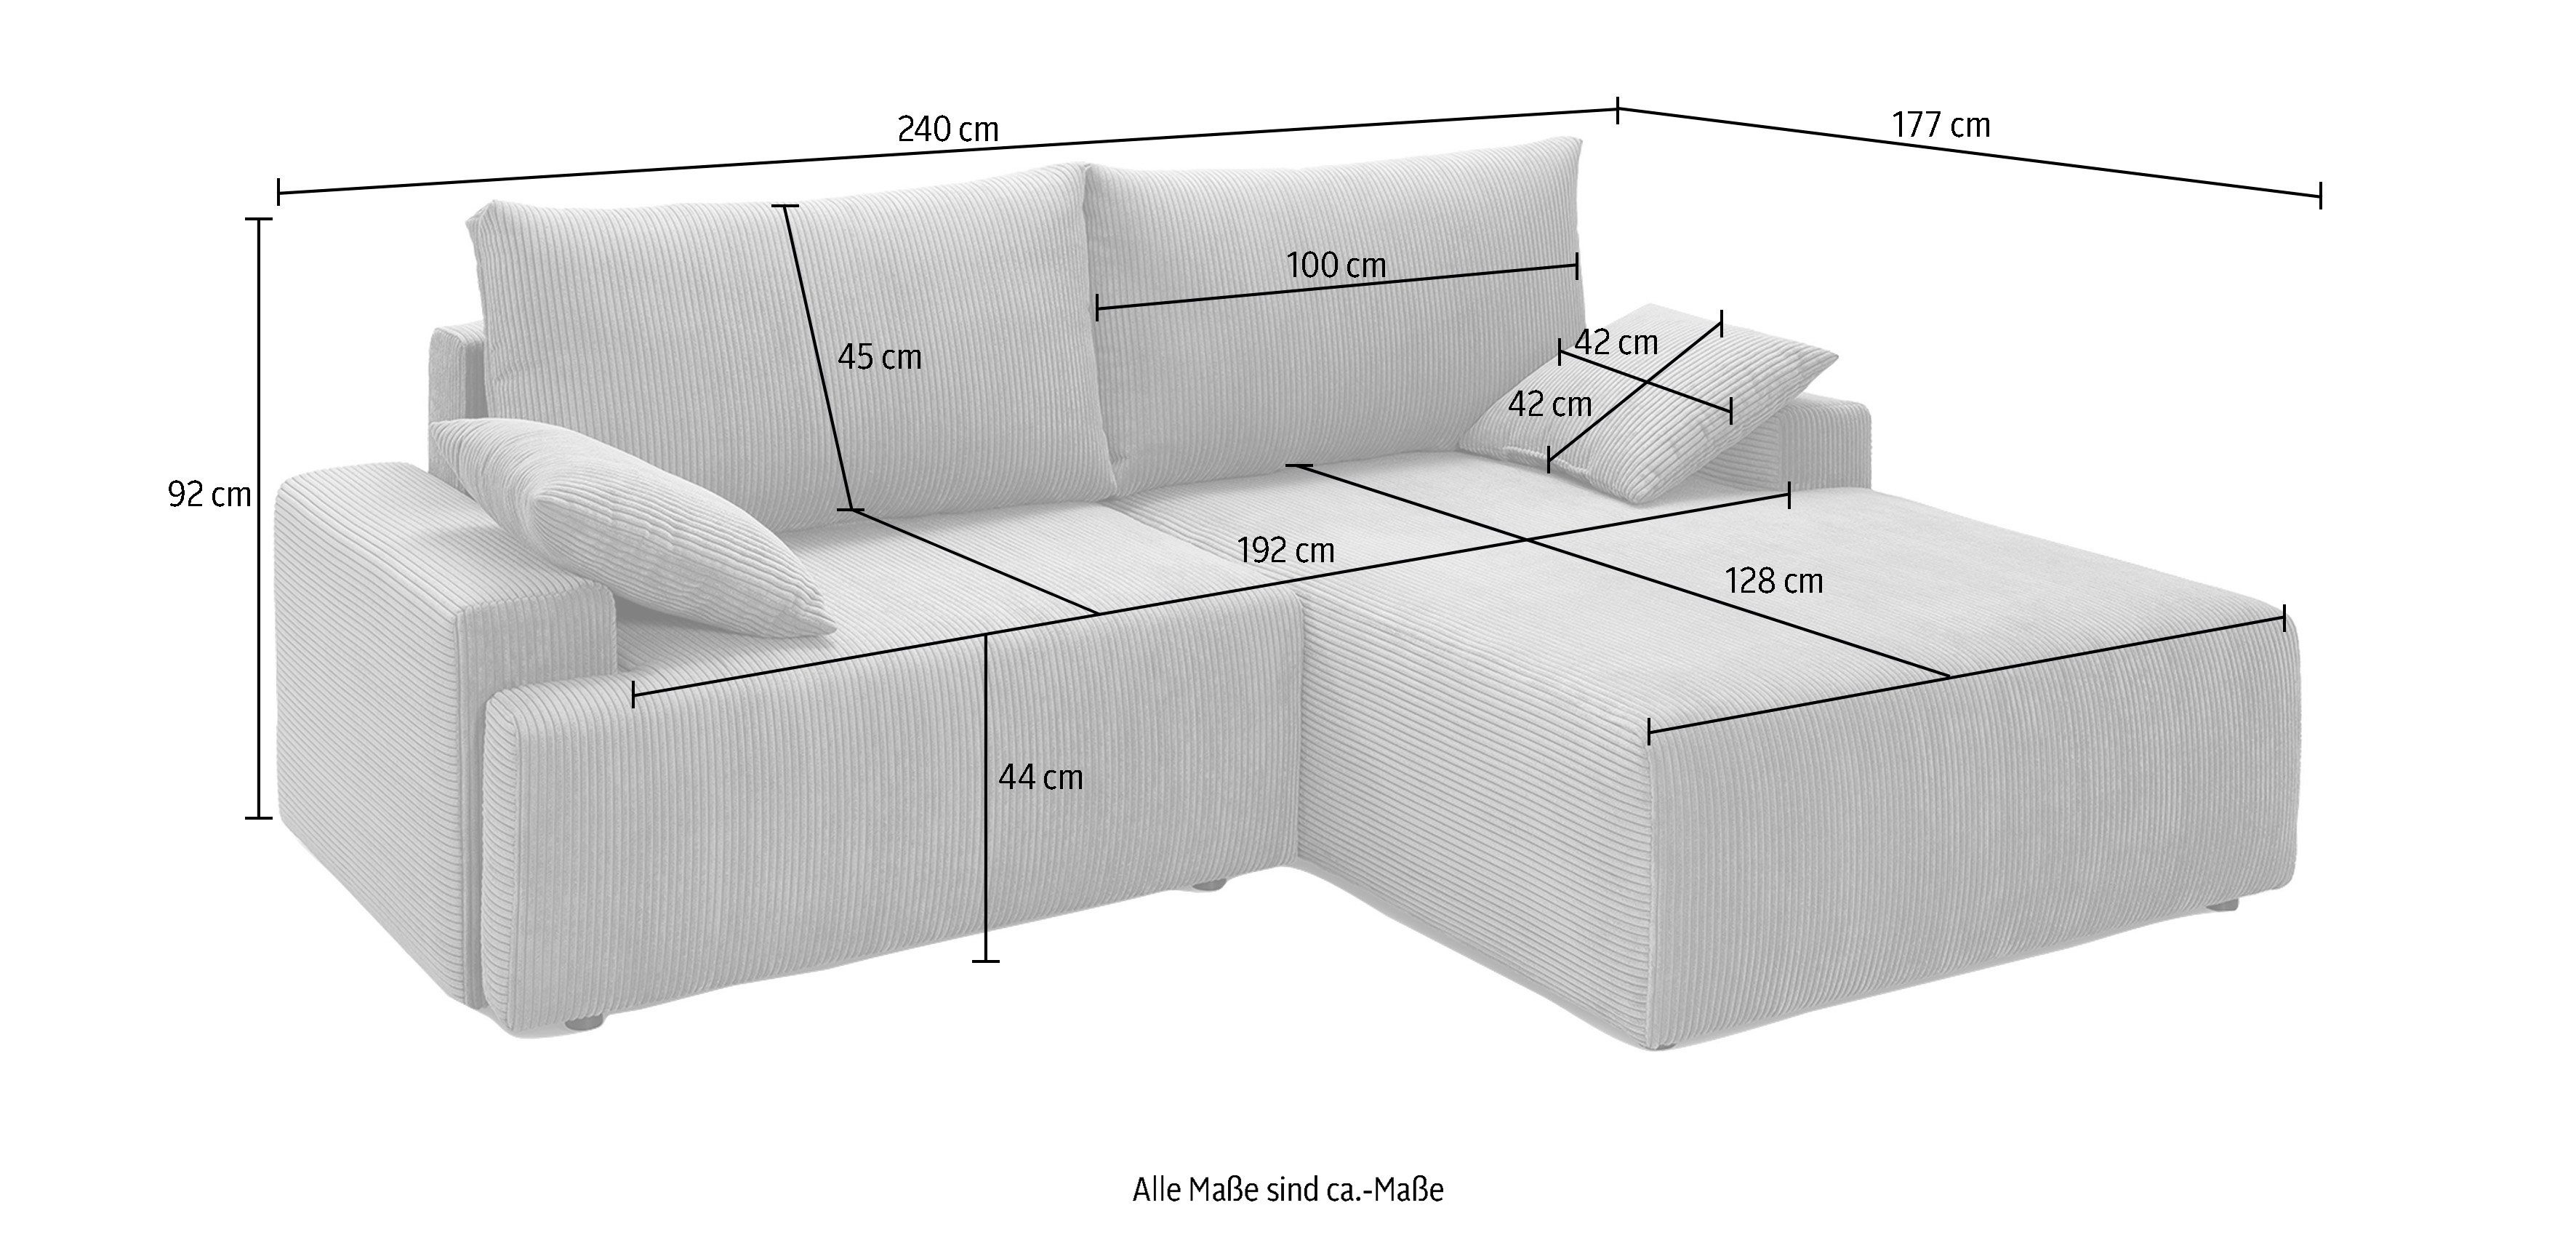 Bettfunktion - Orinoko, sofa inklusive verschiedenen und fashion exxpo navy Bettkasten Cord-Farben in Ecksofa